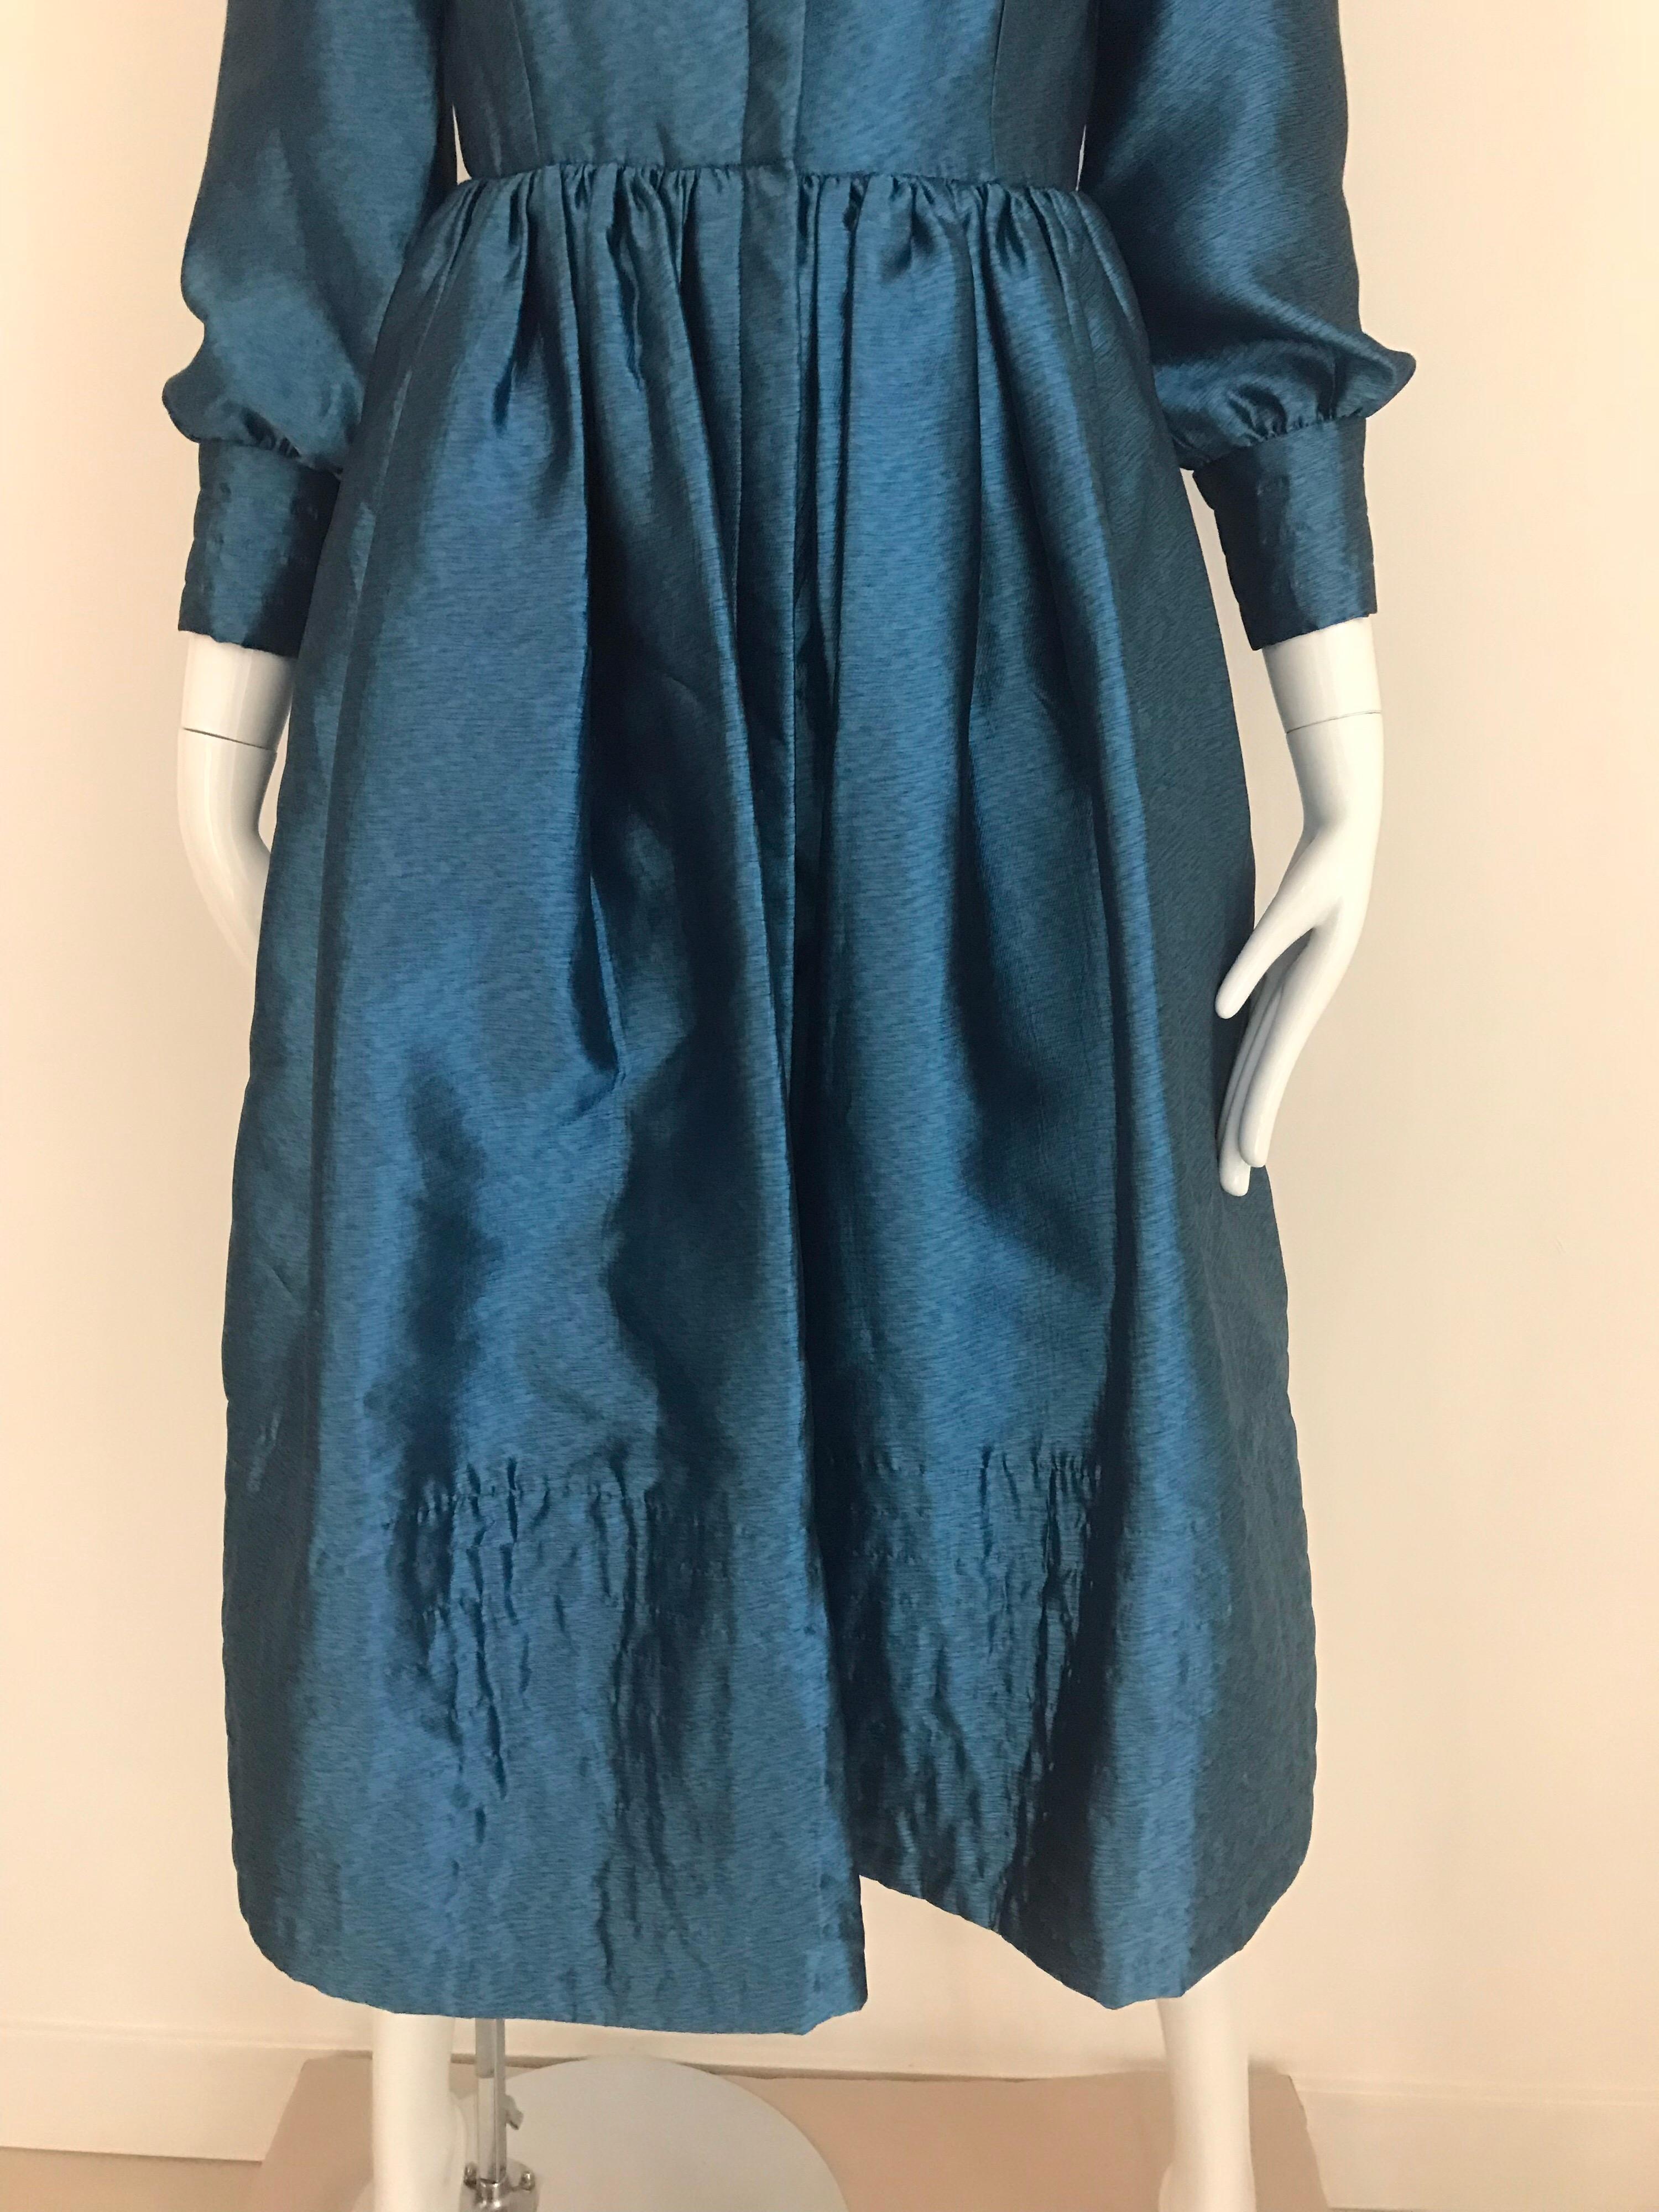 Classic Geoffrey Beene Blue teal silk dress with front zipper.
Size: small - 2/4
Bust: 34”/ Waist 24.5” / shoulder 14”